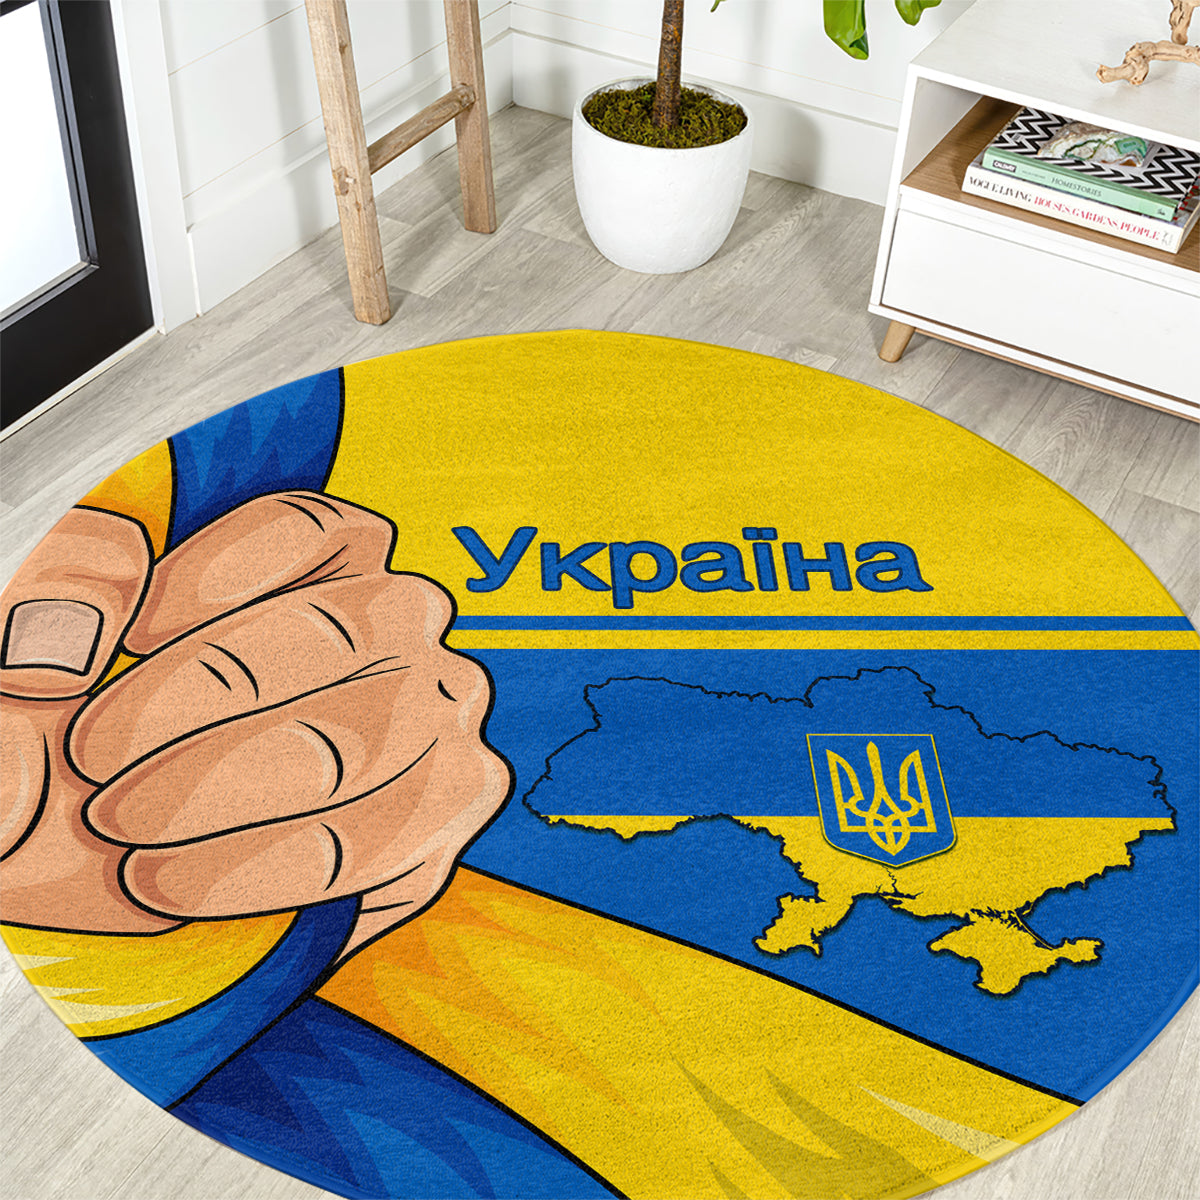 ukraine-unity-day-round-carpet-ukrainian-unification-act